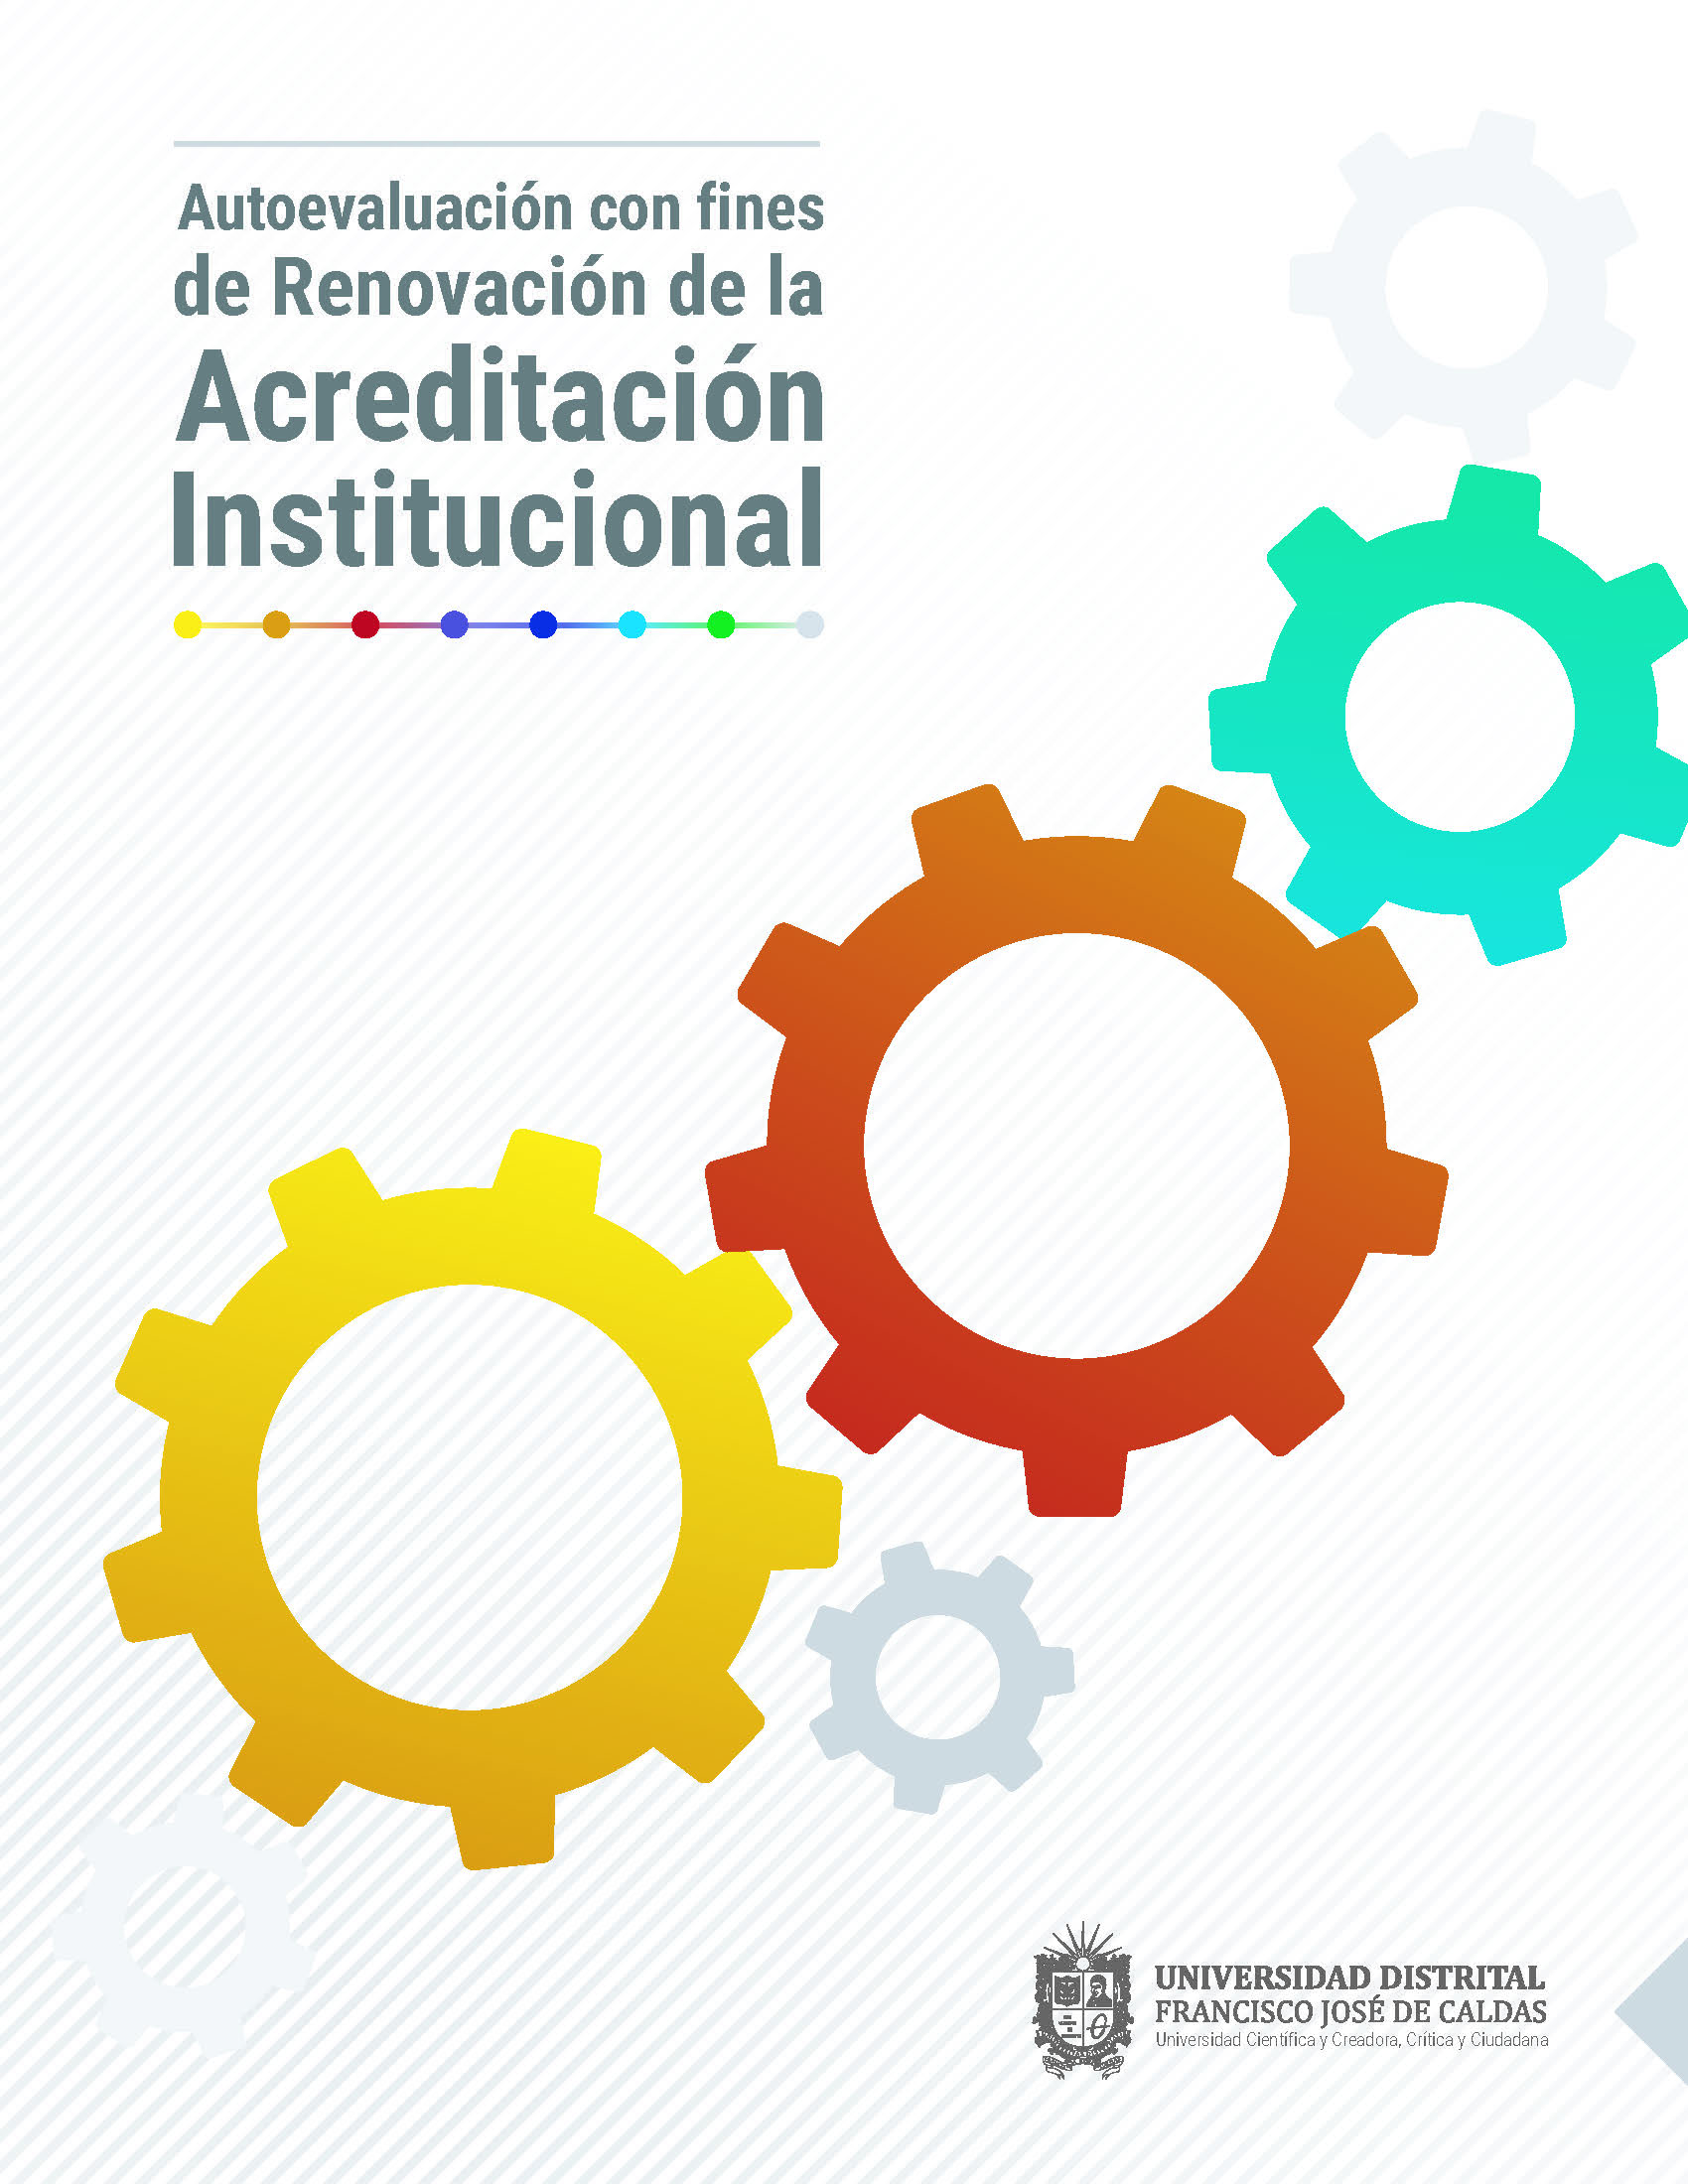 Imagen portada del Informe de autoevaluación con fines de renovación de la acreditación institucional de alta calidad